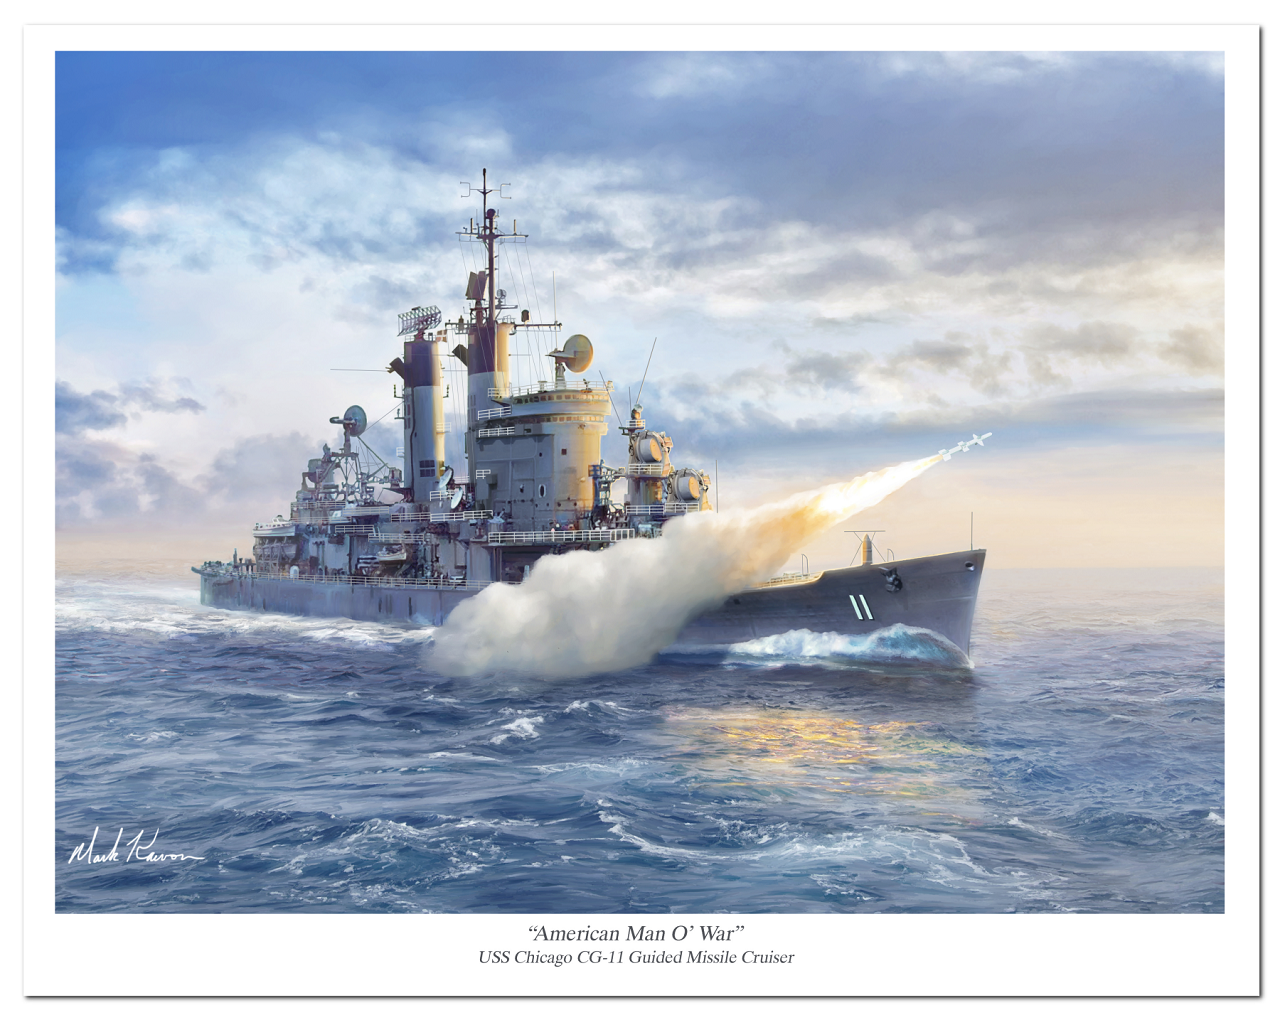 "American Man of War" by Mark Karvon , USS Chicago CG 11